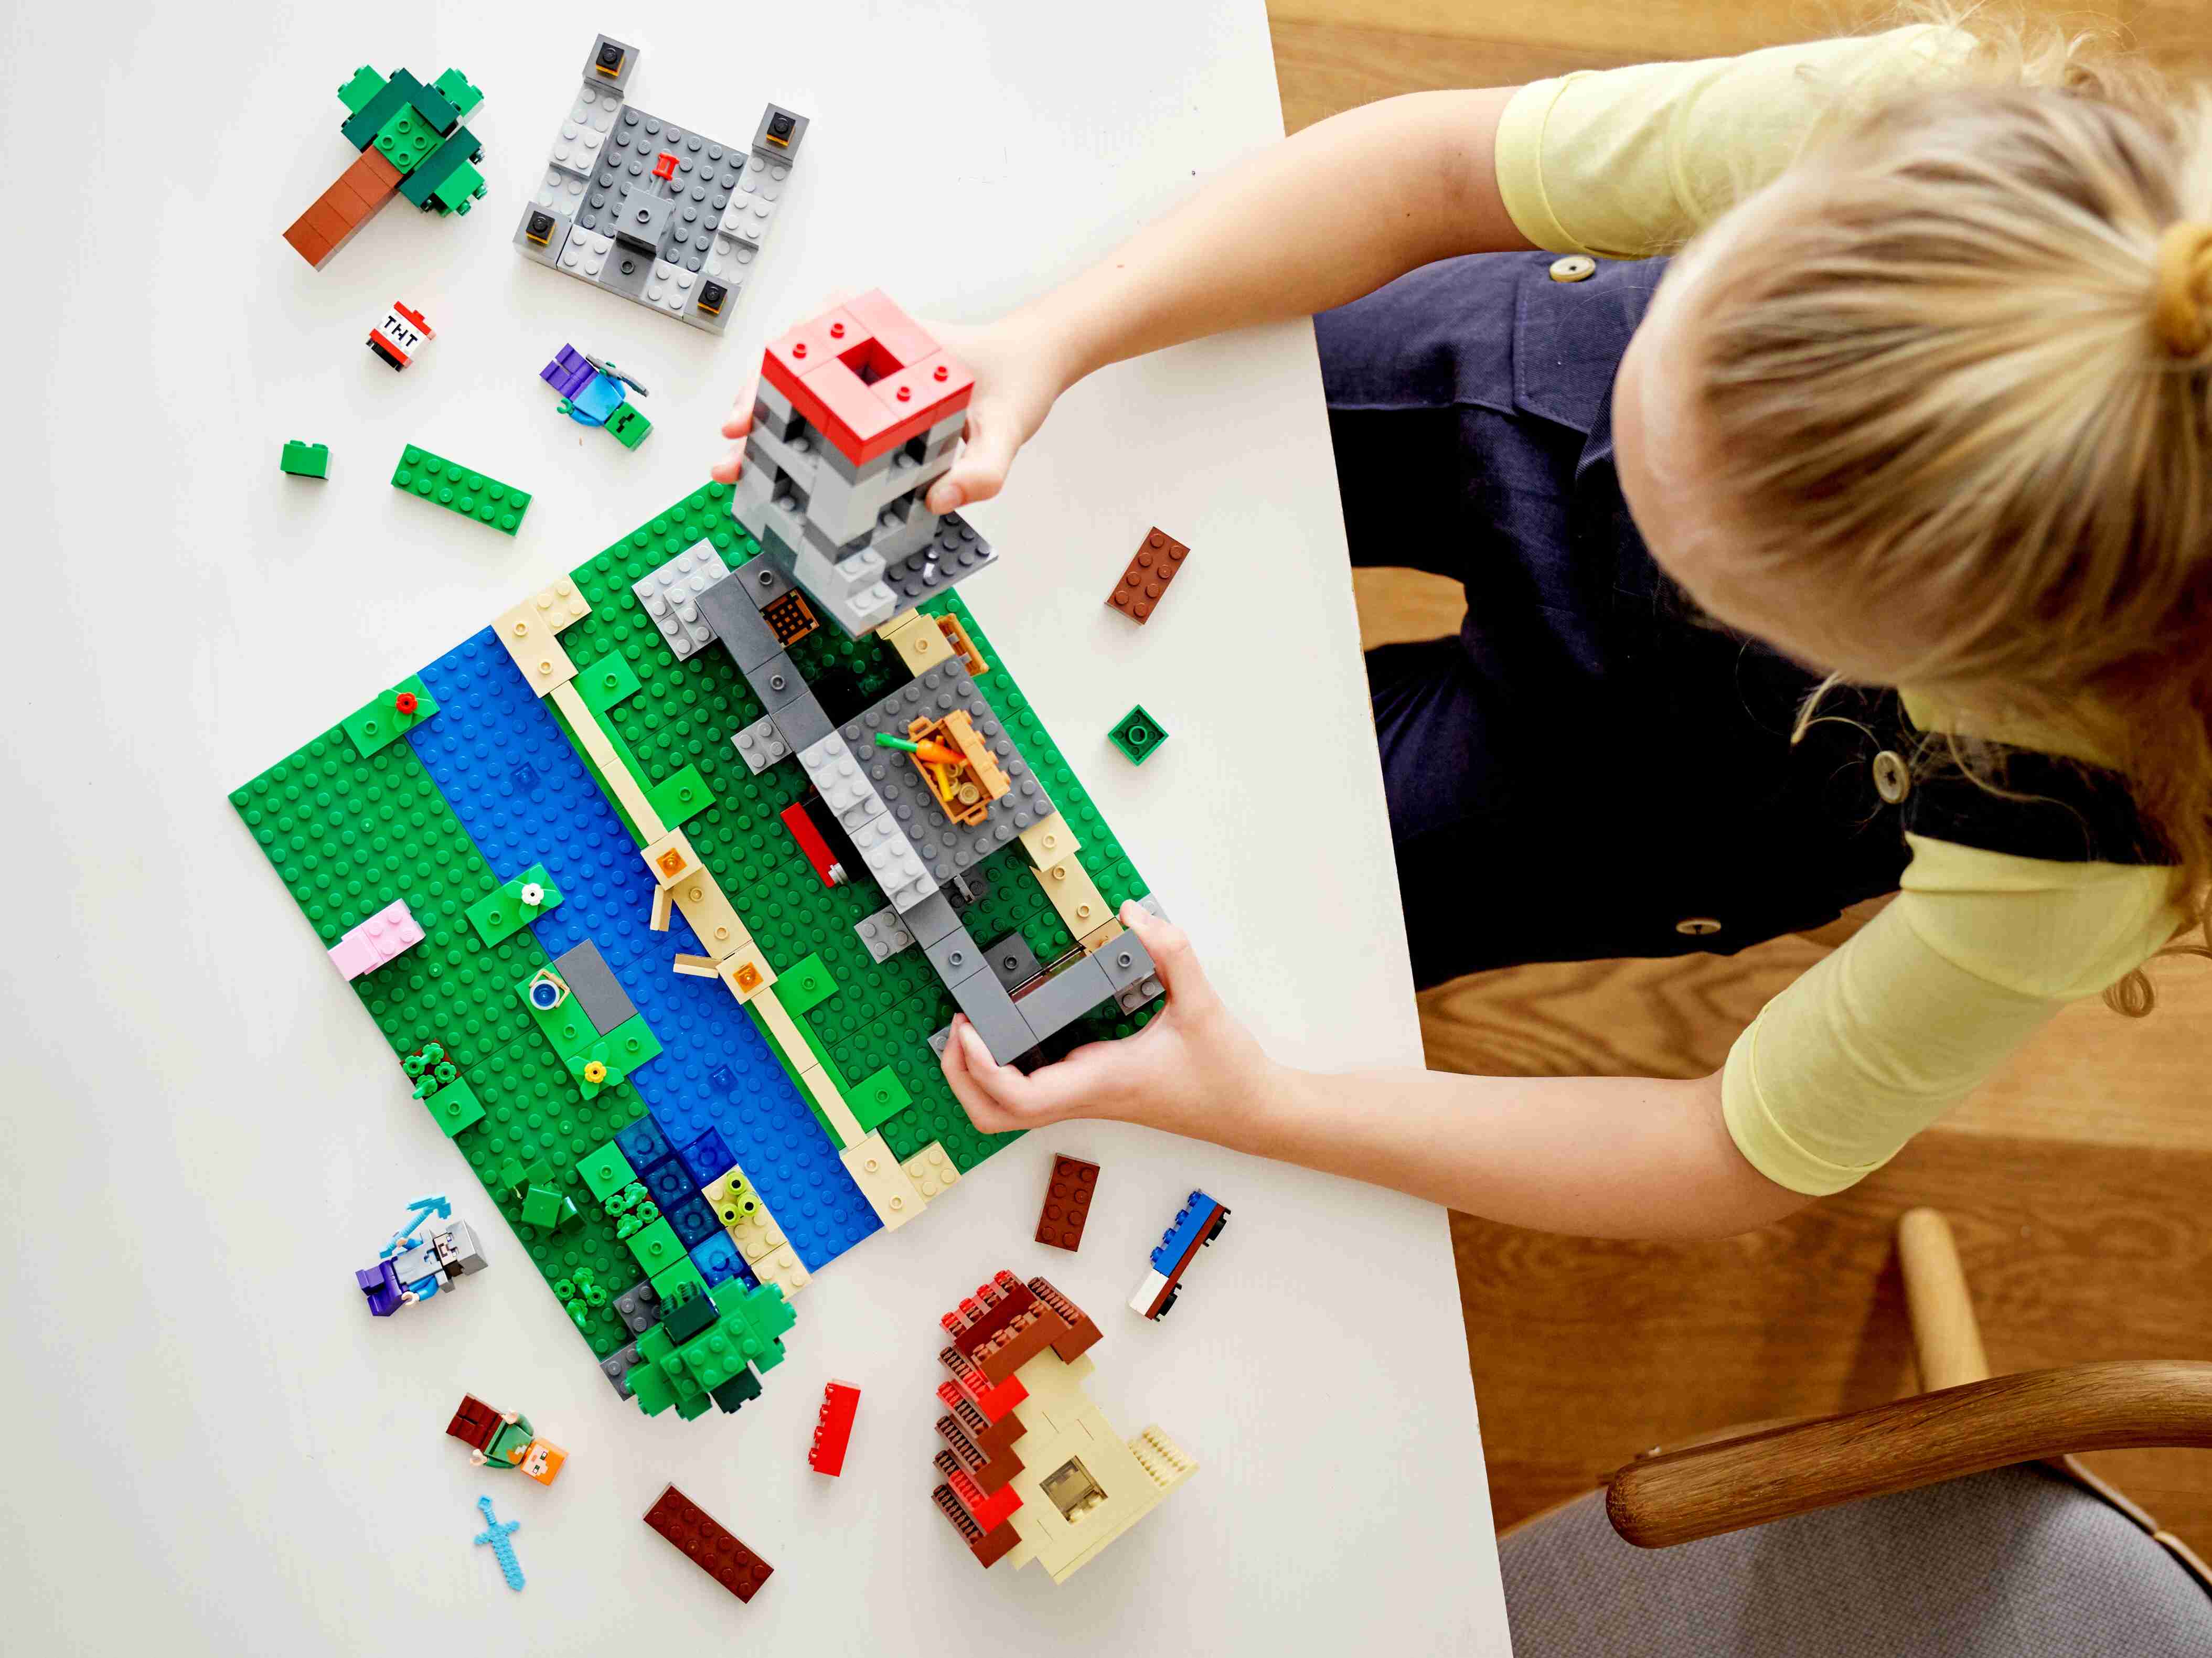 LEGO 21161 Minecraft Die Crafting-Box 3.0, Schloss oder Farm mit: Steve u. Alex